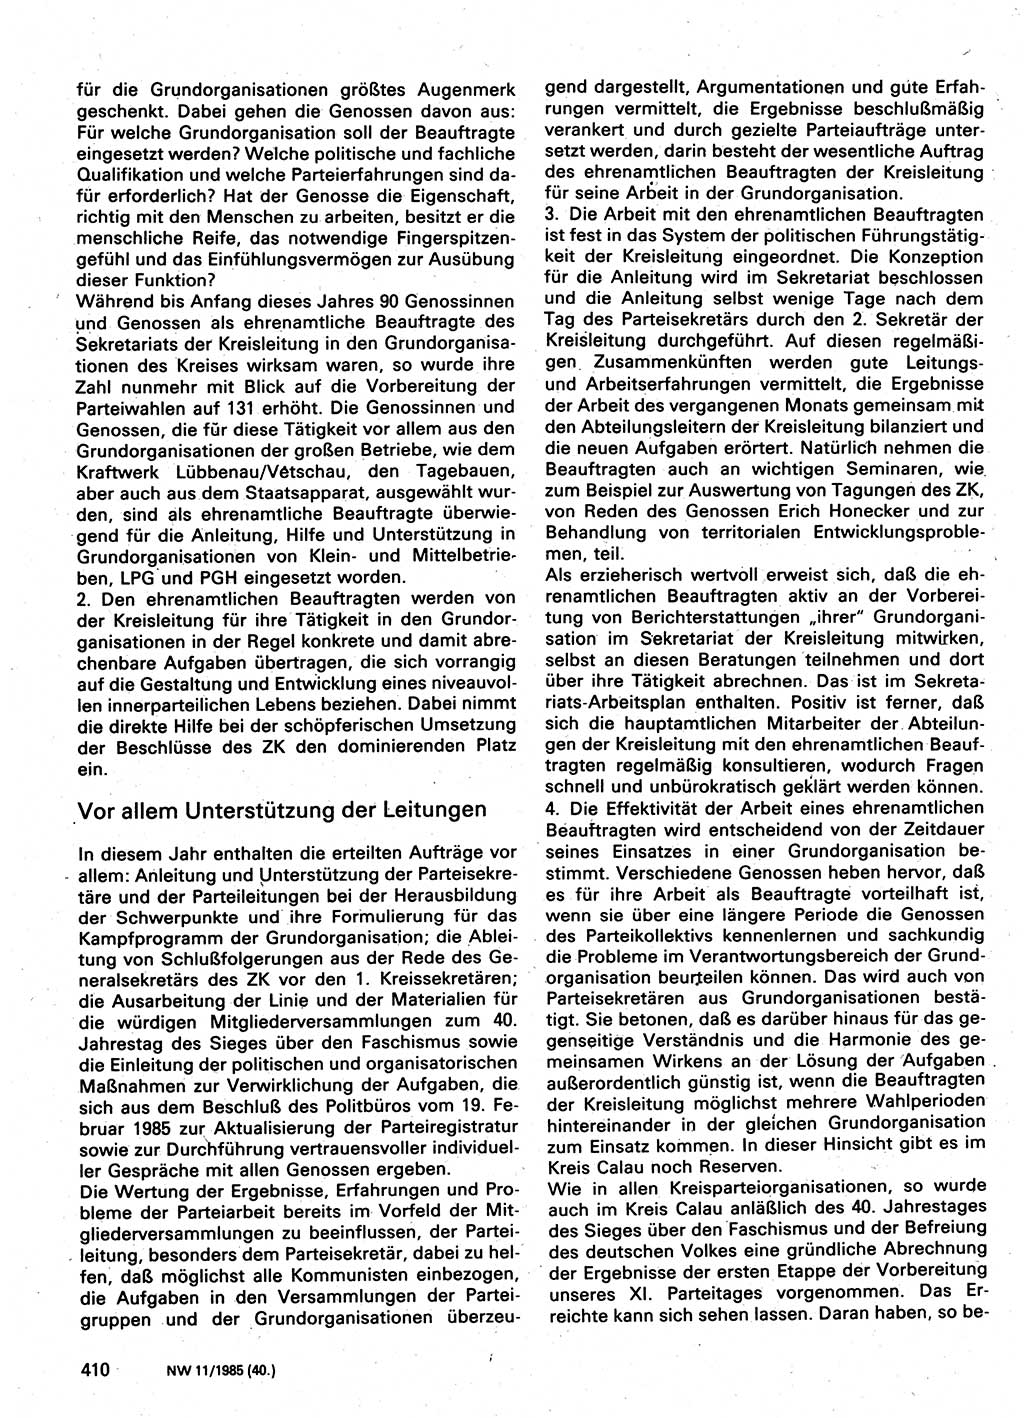 Neuer Weg (NW), Organ des Zentralkomitees (ZK) der SED (Sozialistische Einheitspartei Deutschlands) für Fragen des Parteilebens, 40. Jahrgang [Deutsche Demokratische Republik (DDR)] 1985, Seite 410 (NW ZK SED DDR 1985, S. 410)